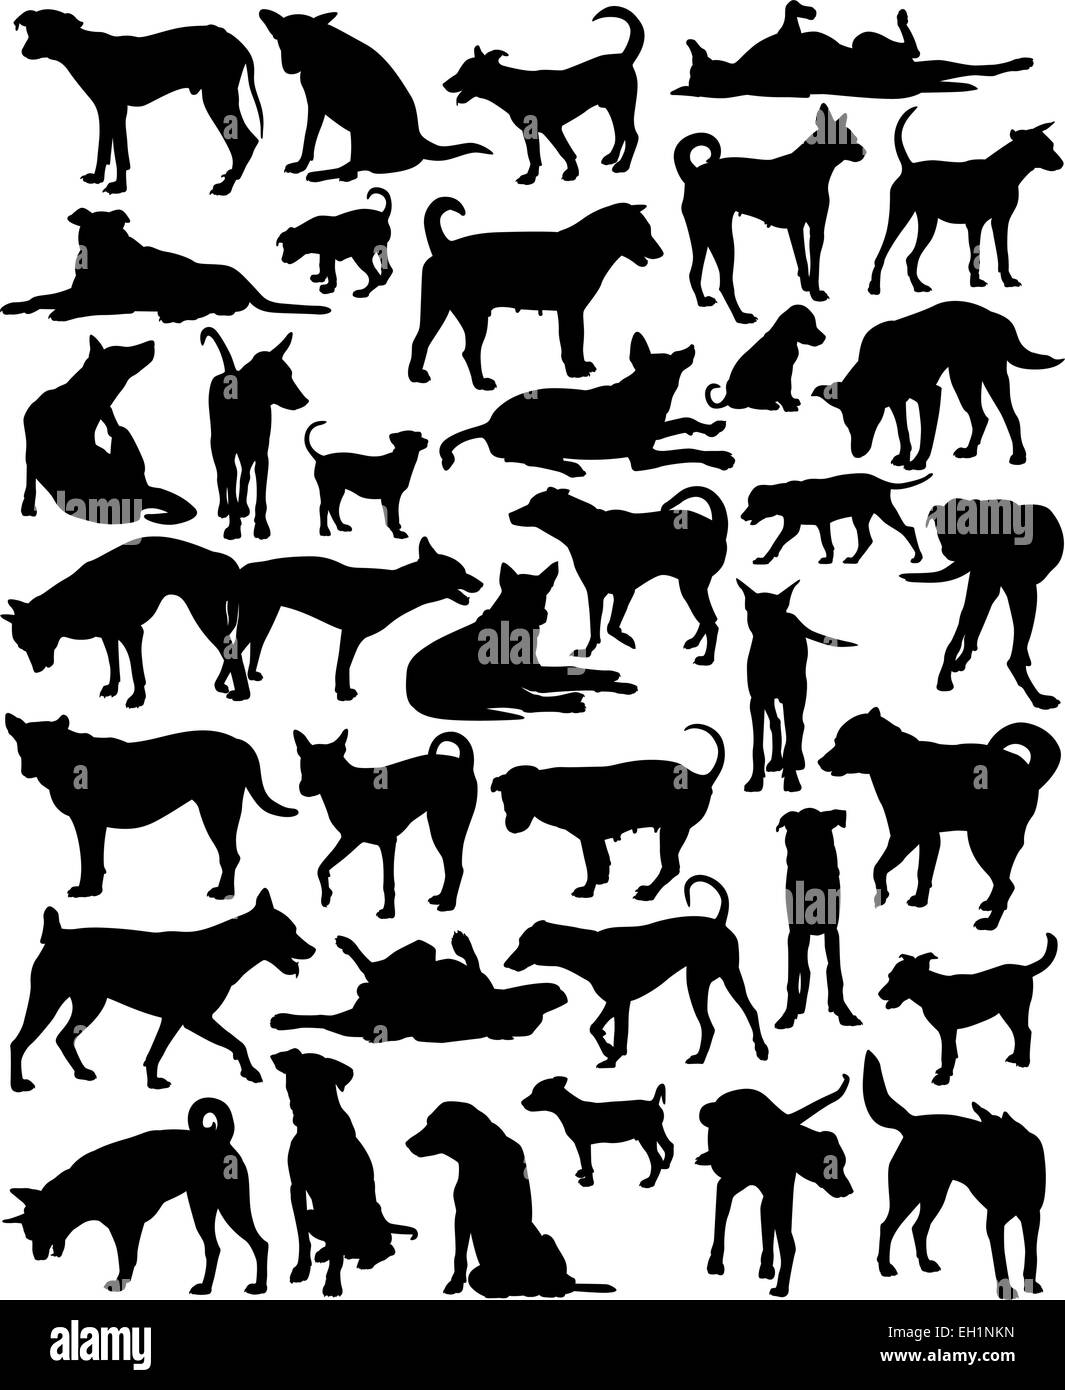 Collection de silhouettes vecteur modifiable d'un groupe disparate de Bangkok street dogs Illustration de Vecteur